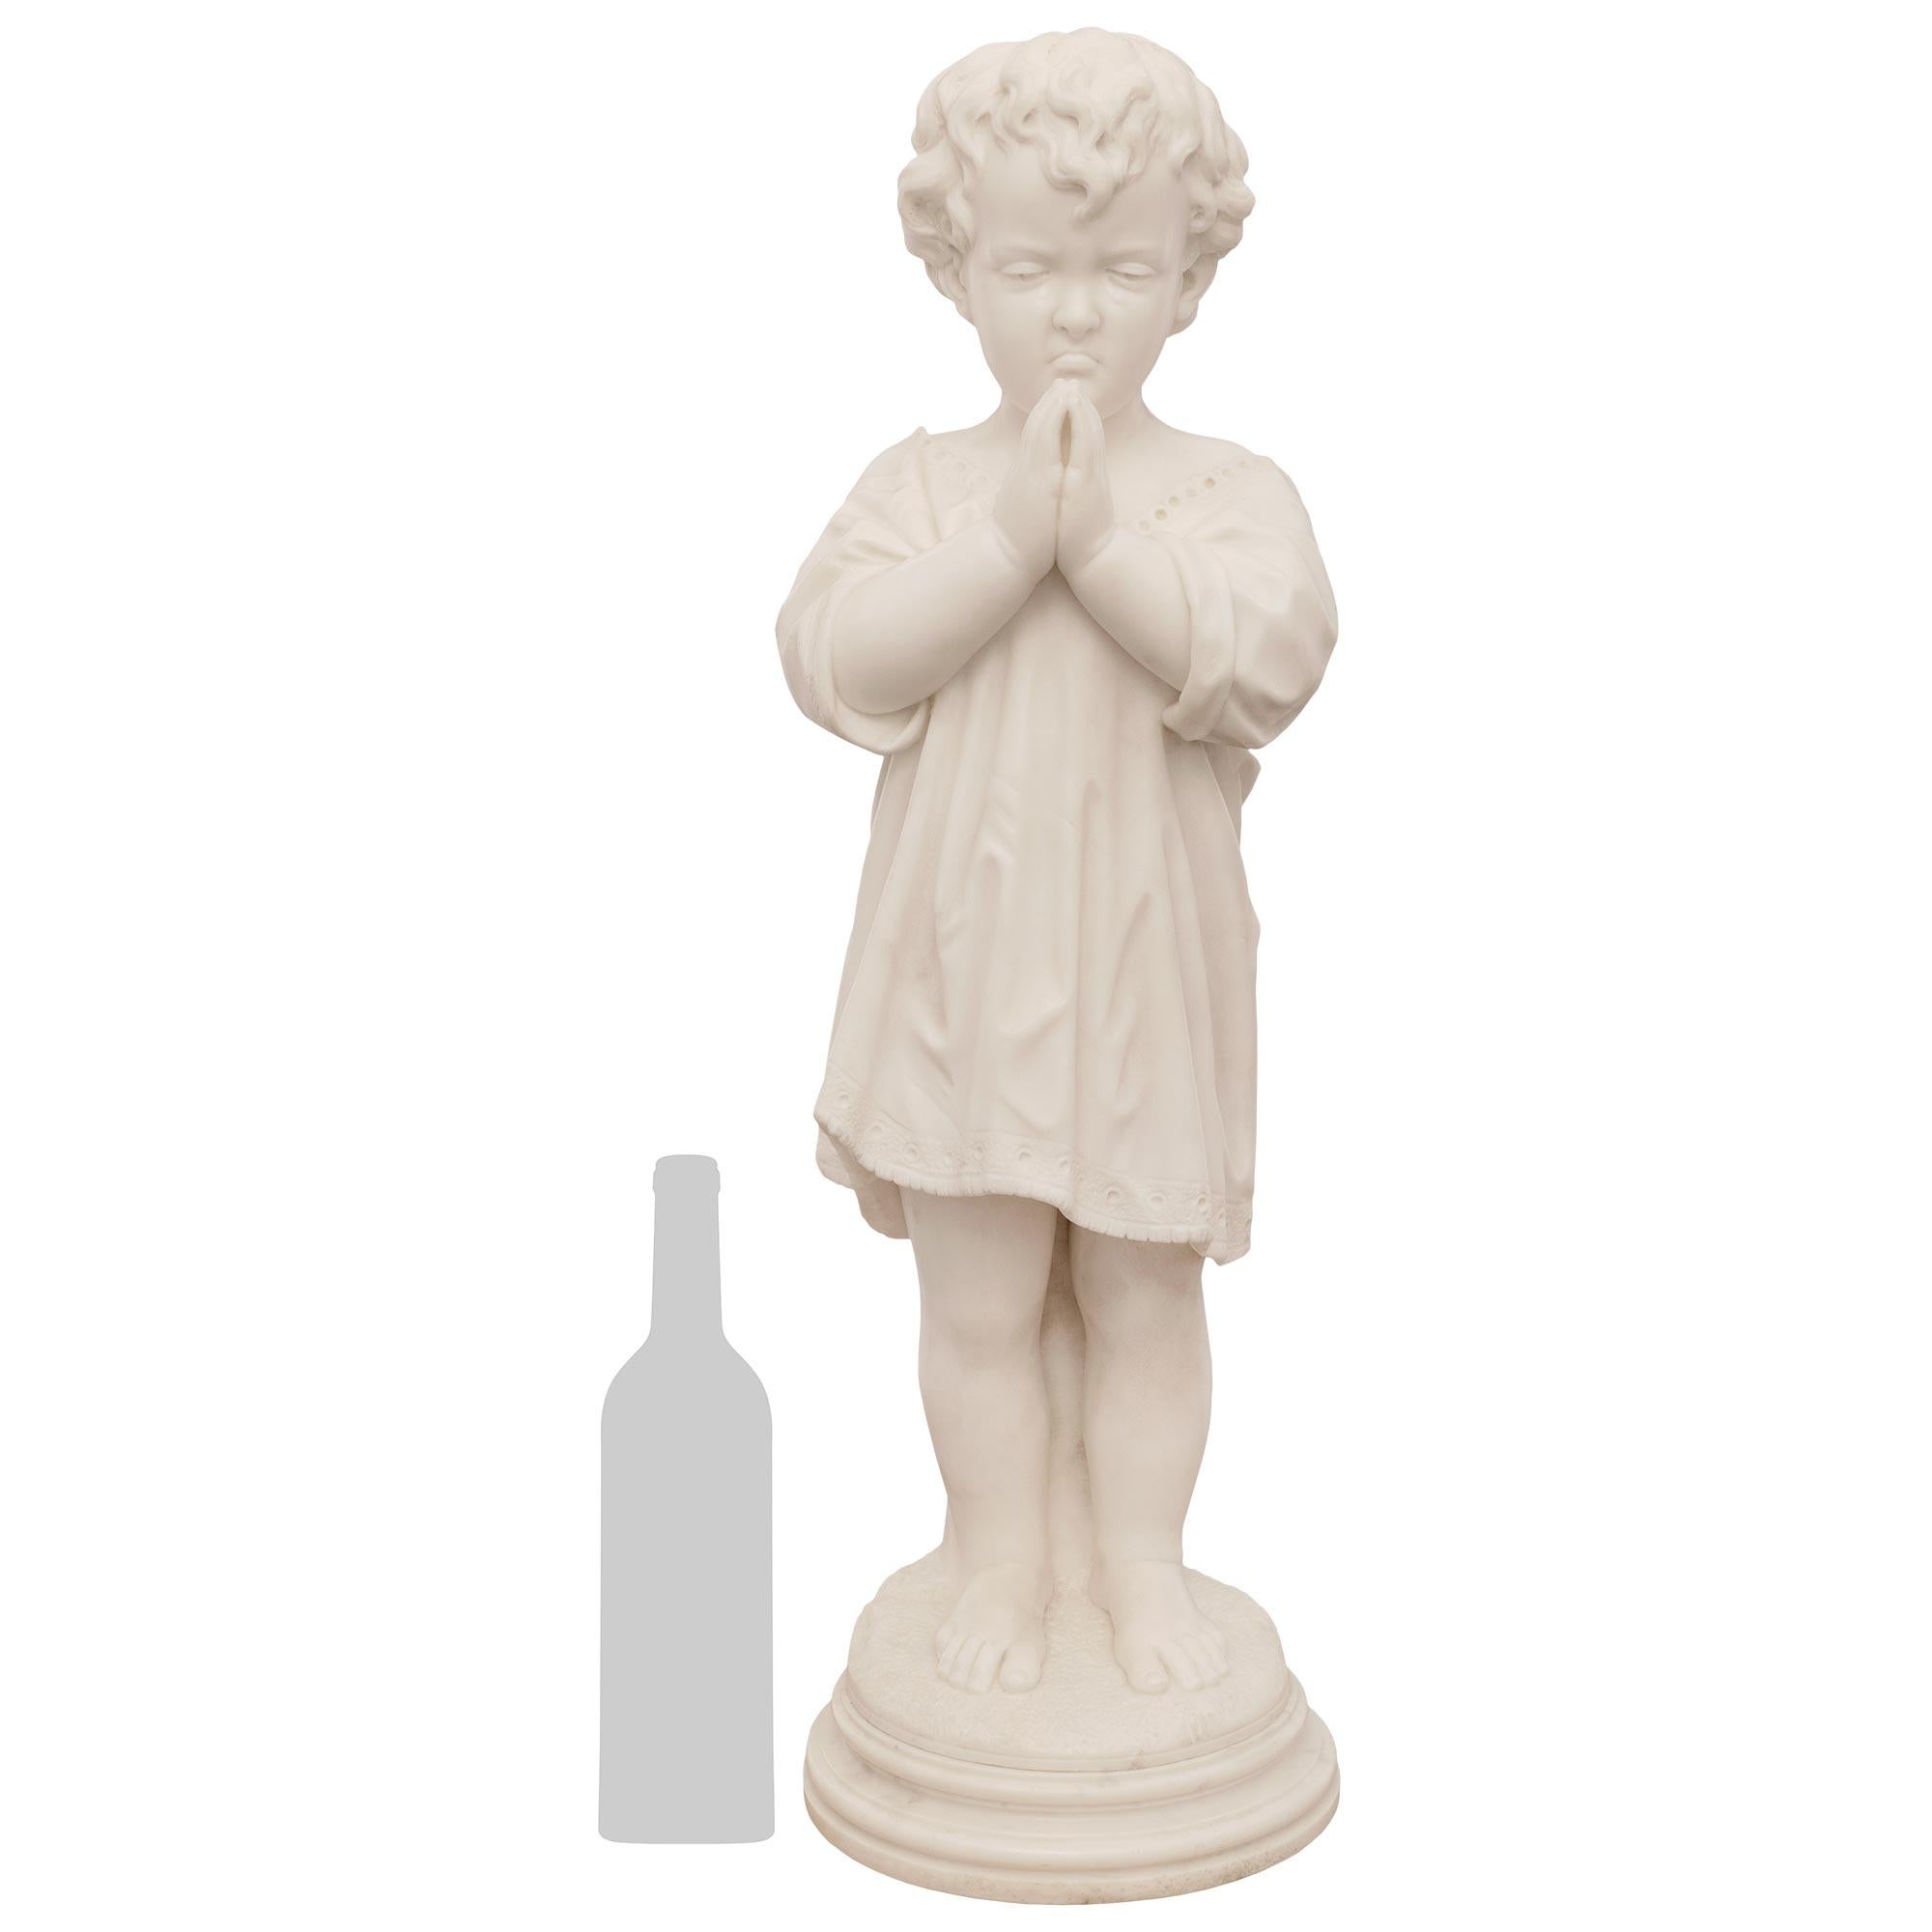 Charmante statue italienne du XIXe siècle en marbre blanc de Carrare représentant un jeune garçon, signée Pietro Franchi, Rome. L'enfant en prière est élevé sur un piédestal circulaire tacheté et porte des vêtements classiques tout en joignant les